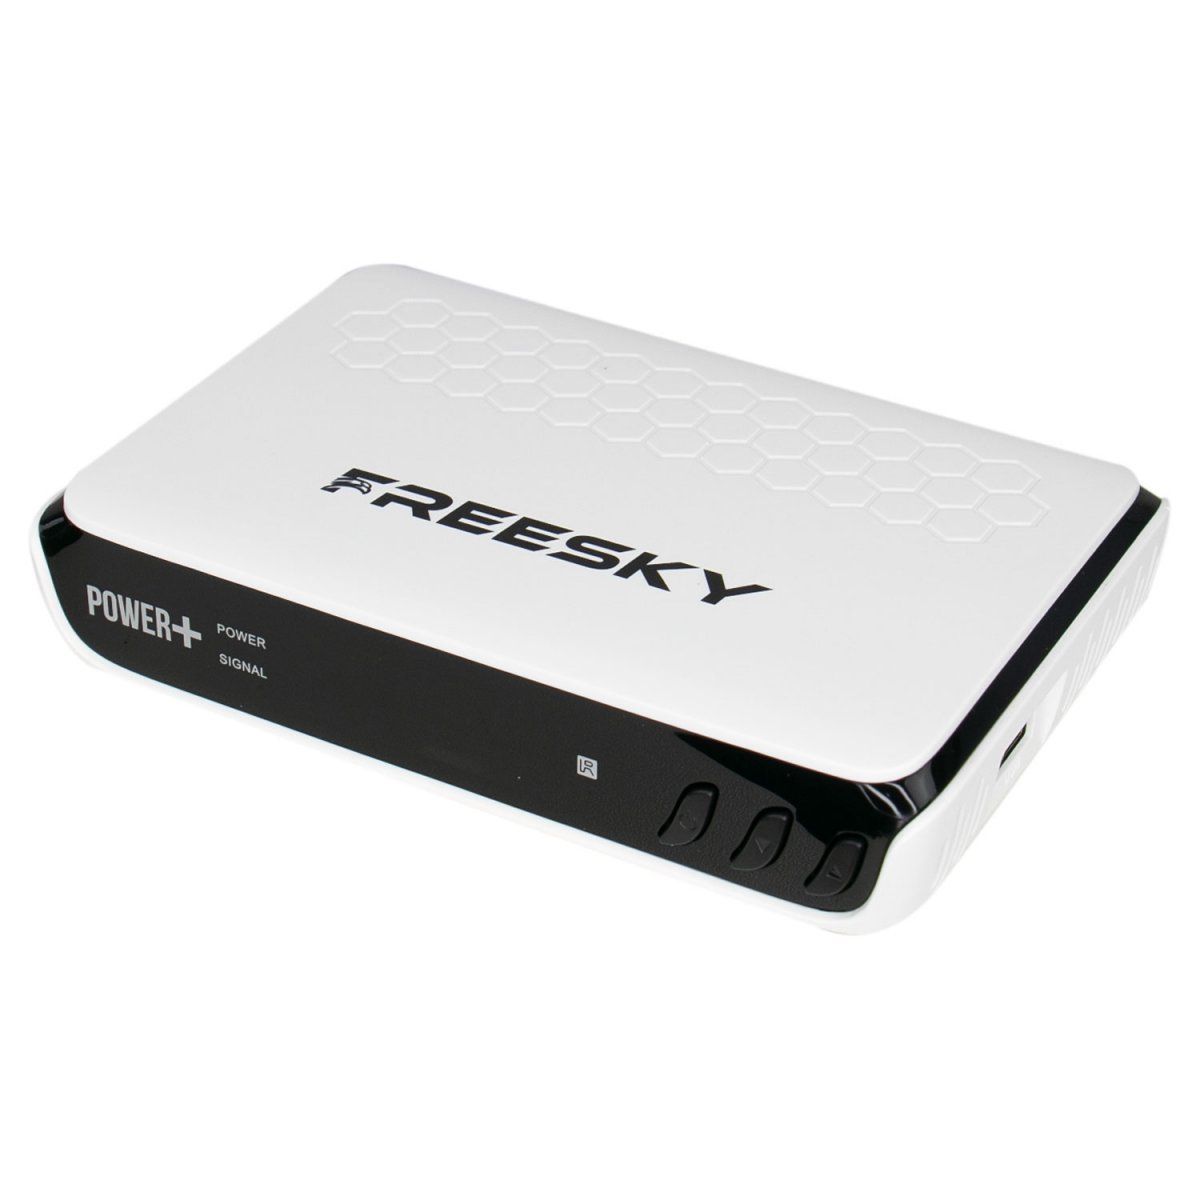 Freesky Power + Plus Atualização V1.16 Cfe472361cb9f319cf6a7112268ae8ce.jpg-1200x1200